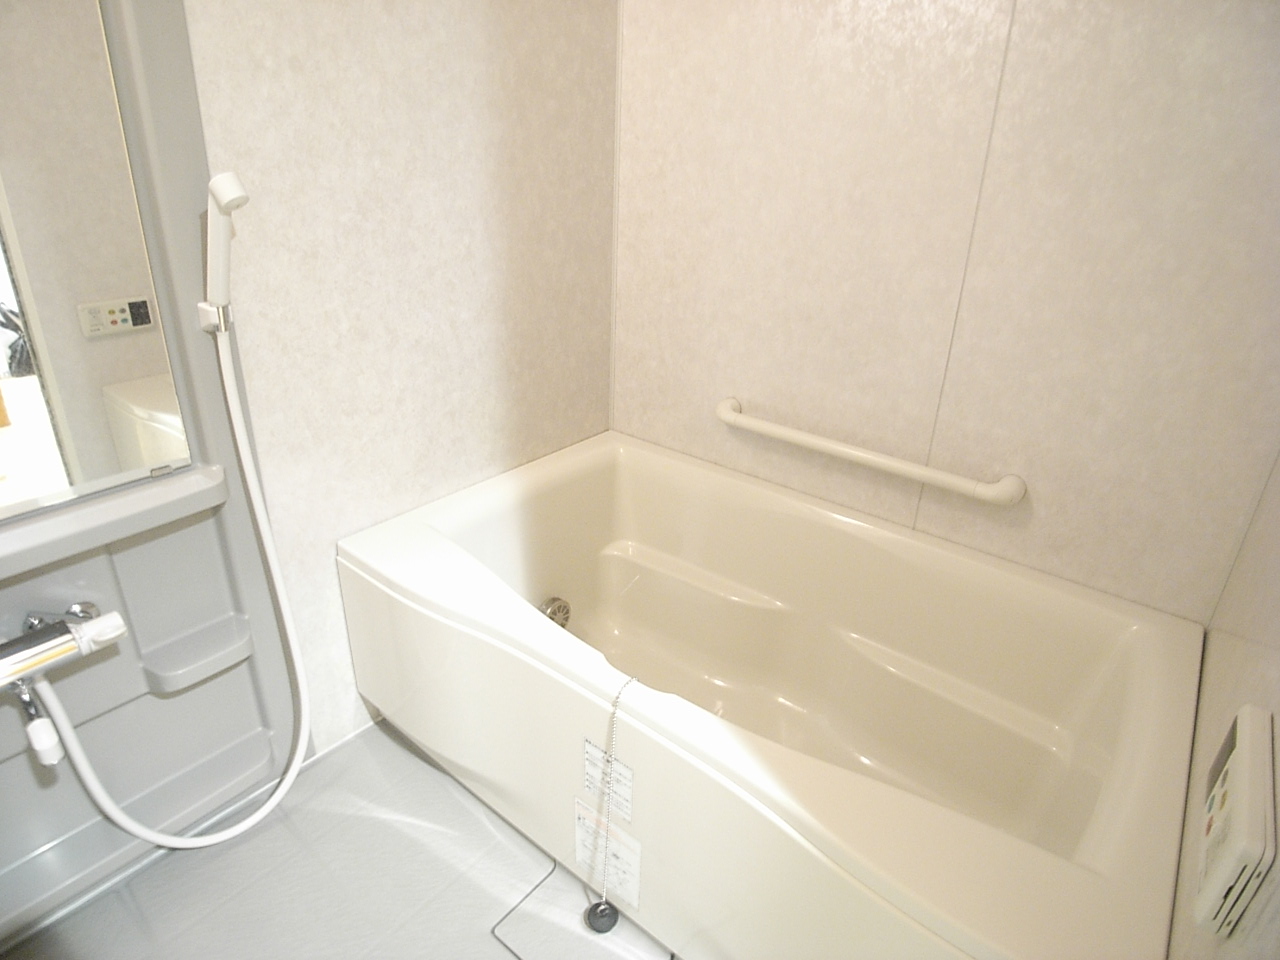 Bath. Use a good floor of drainage